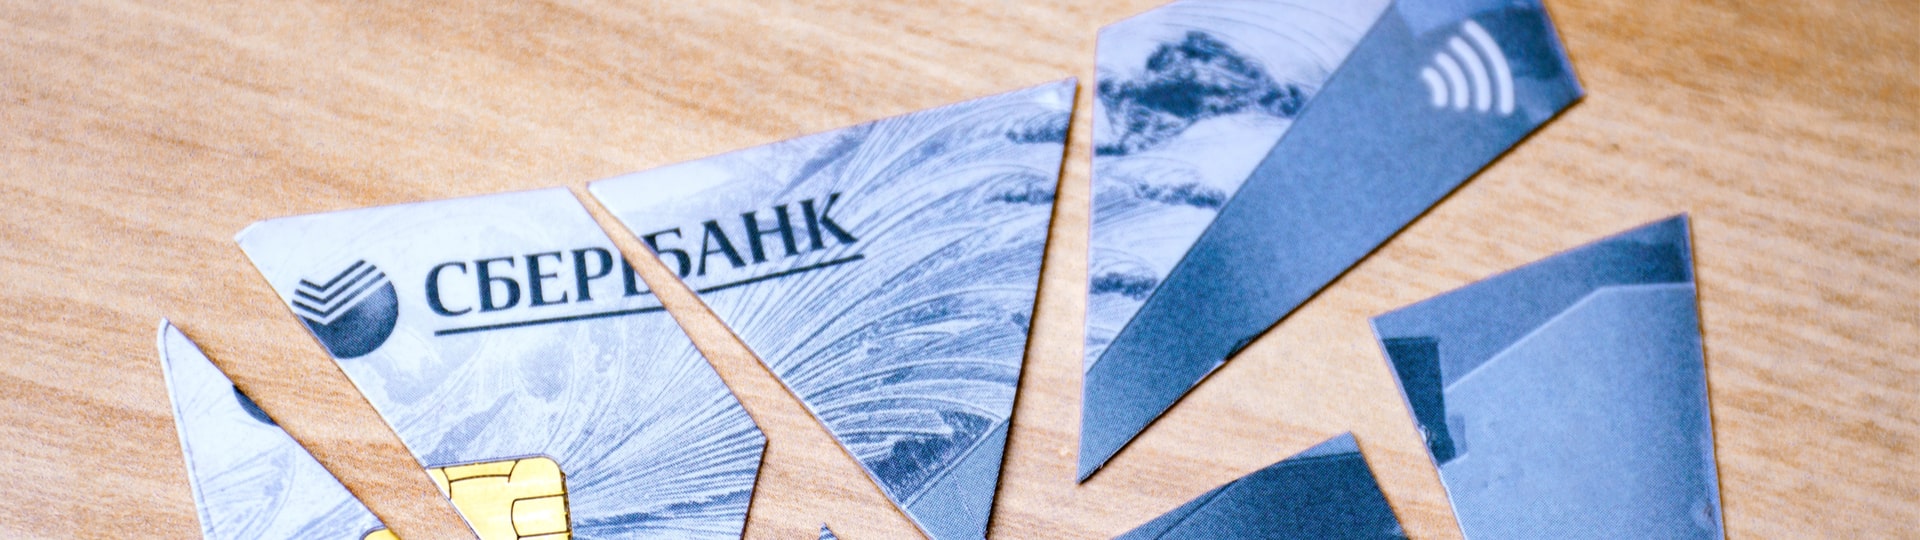 Správkyně Sberbank dnes odešle nabídku na prodej úvěrového portfolia